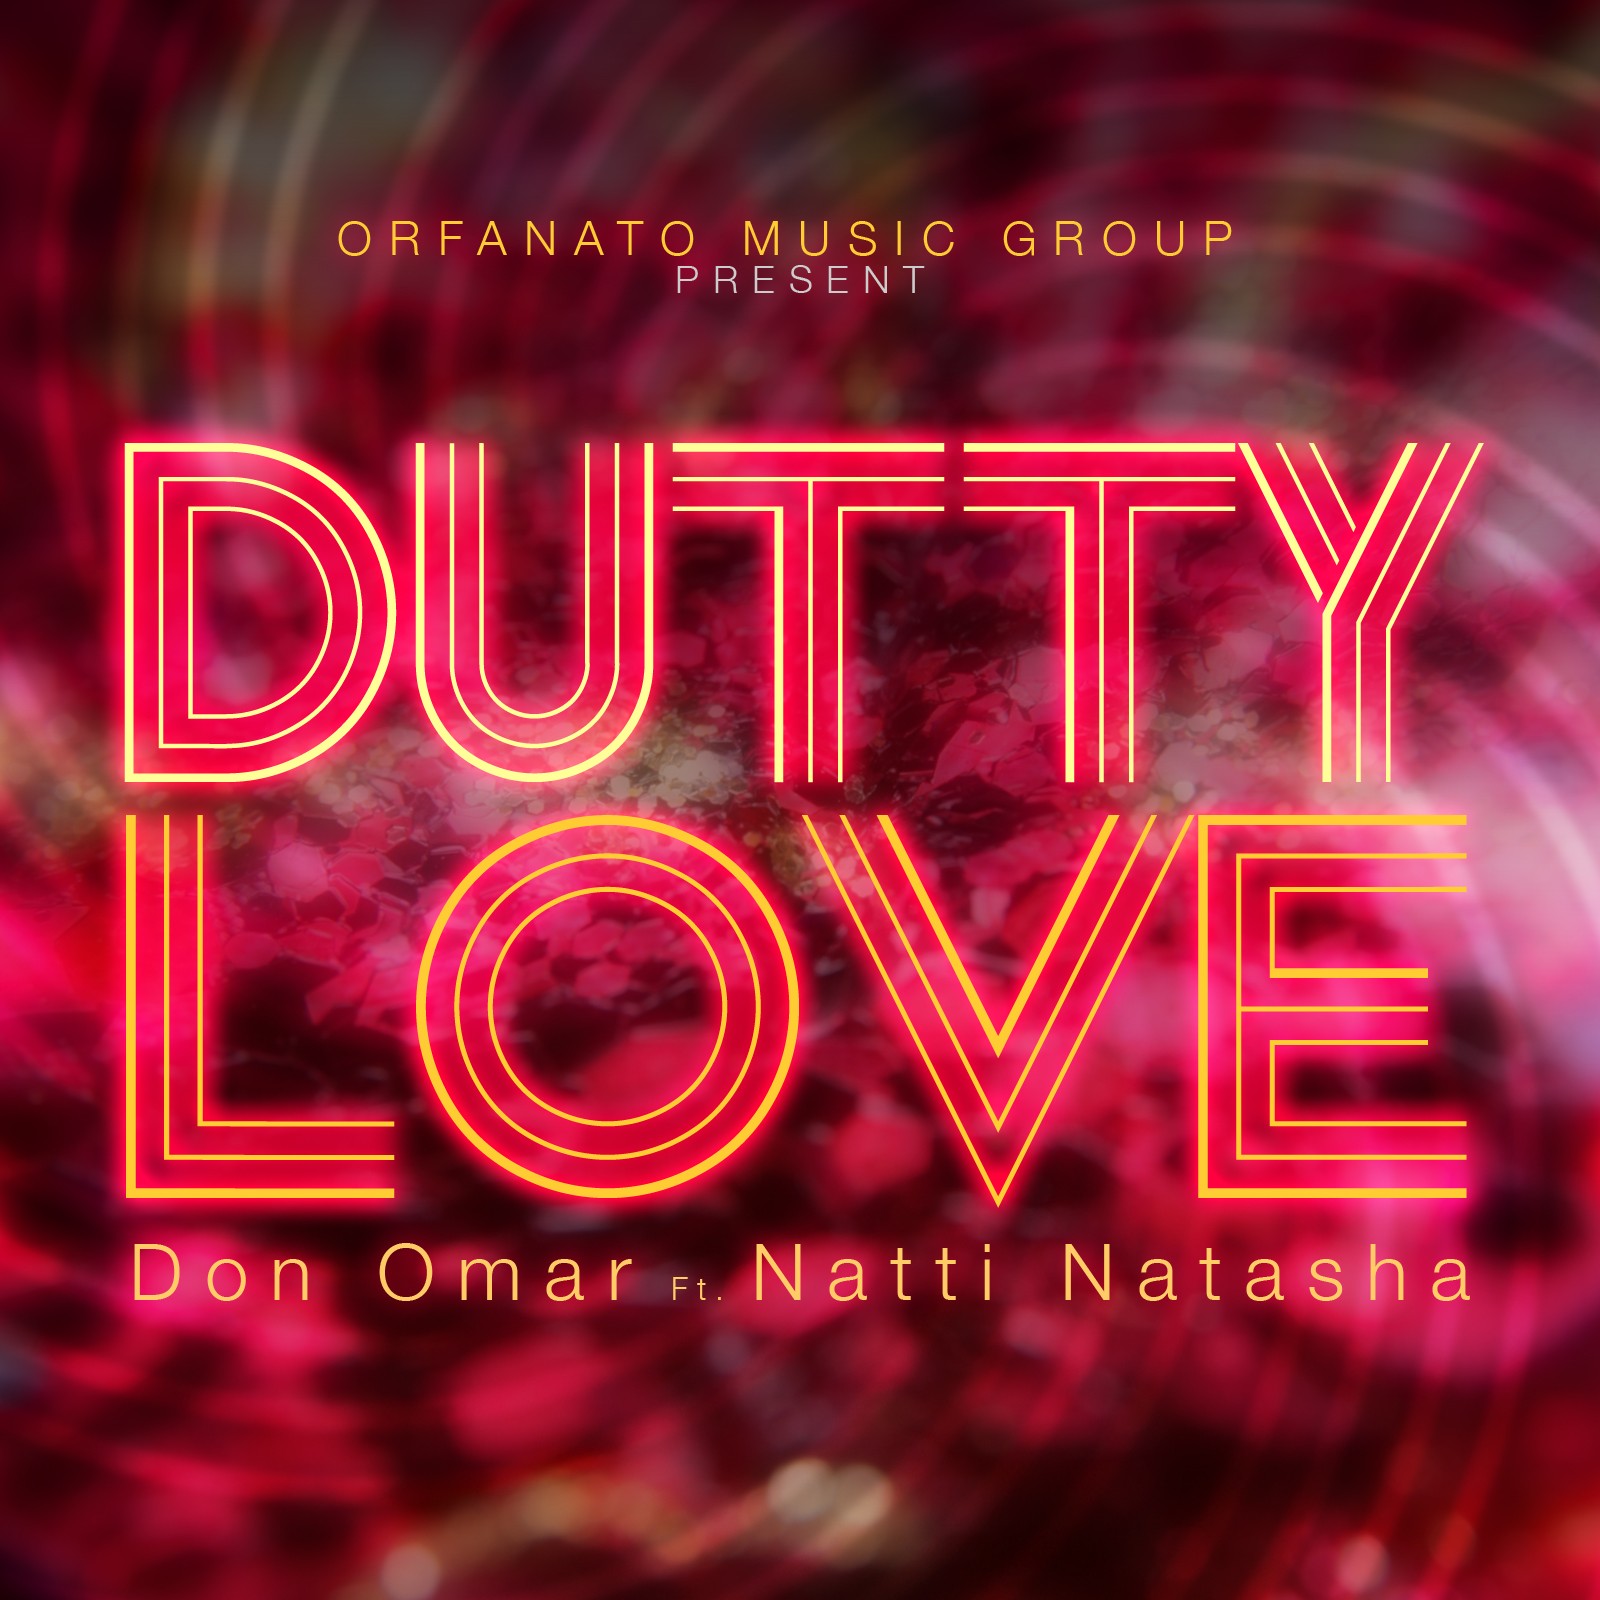 Don omar dutty love